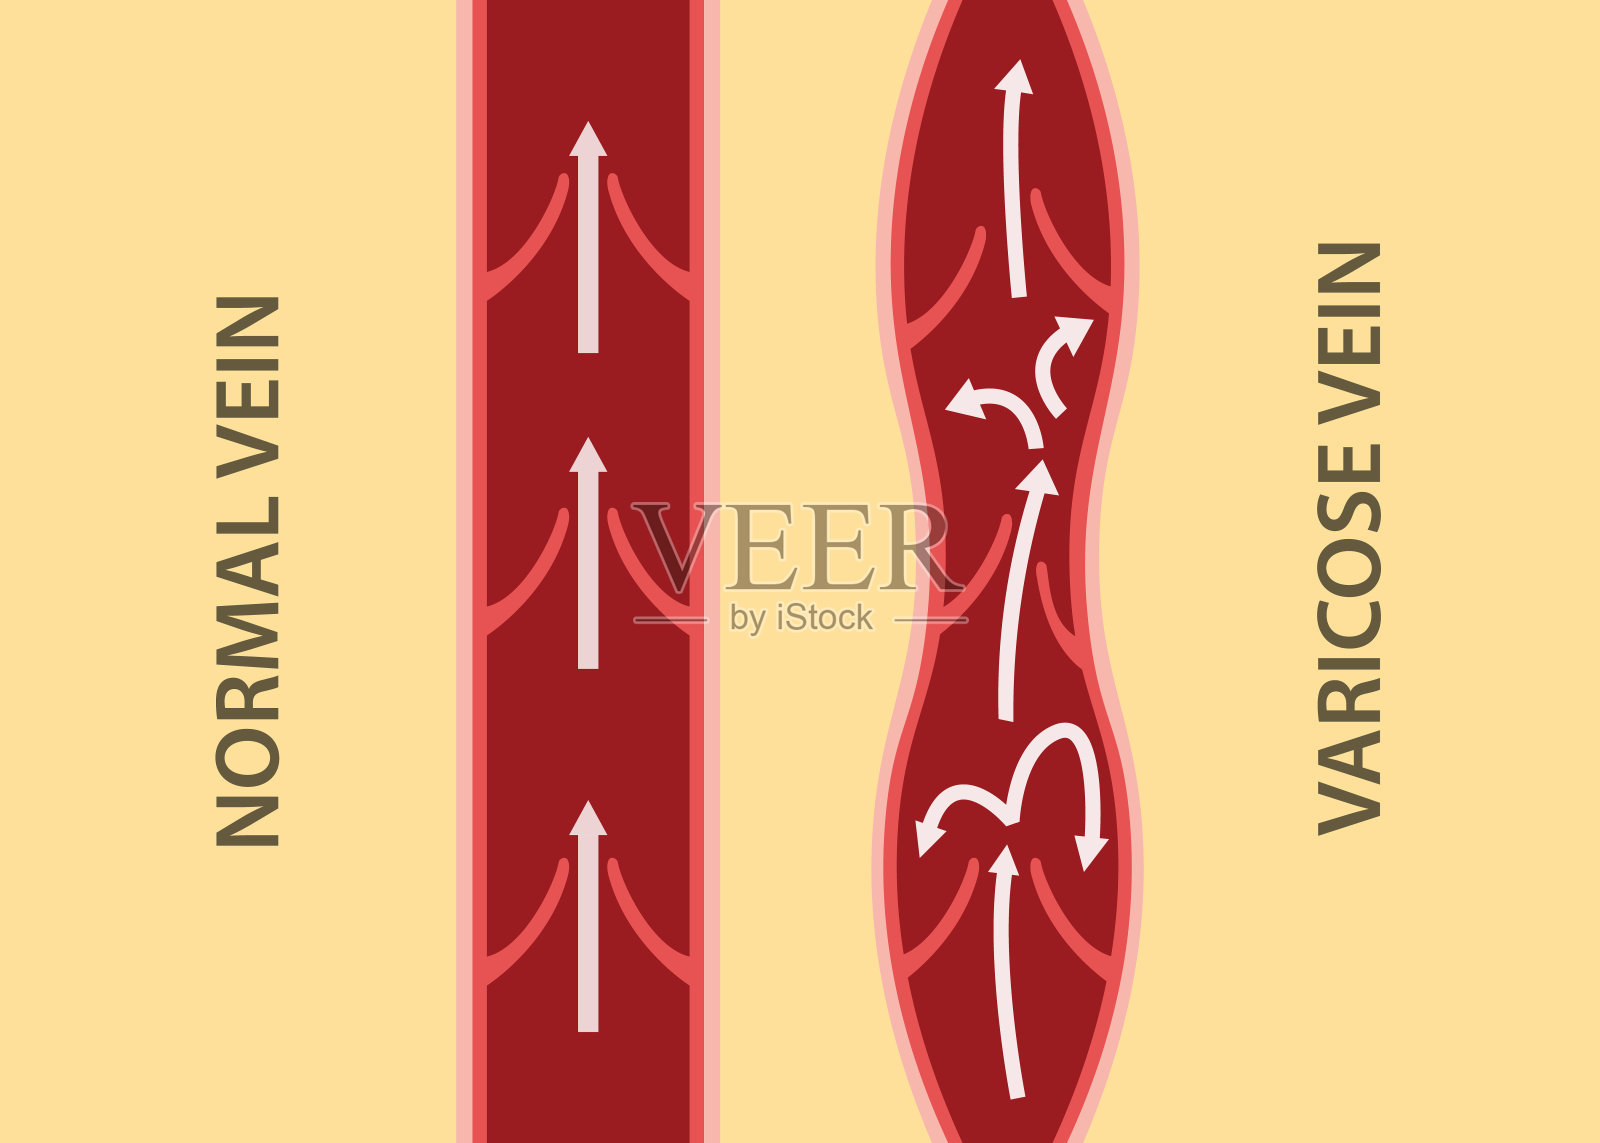 静脉曲张与正常静脉垂直排列的比较插画图片素材